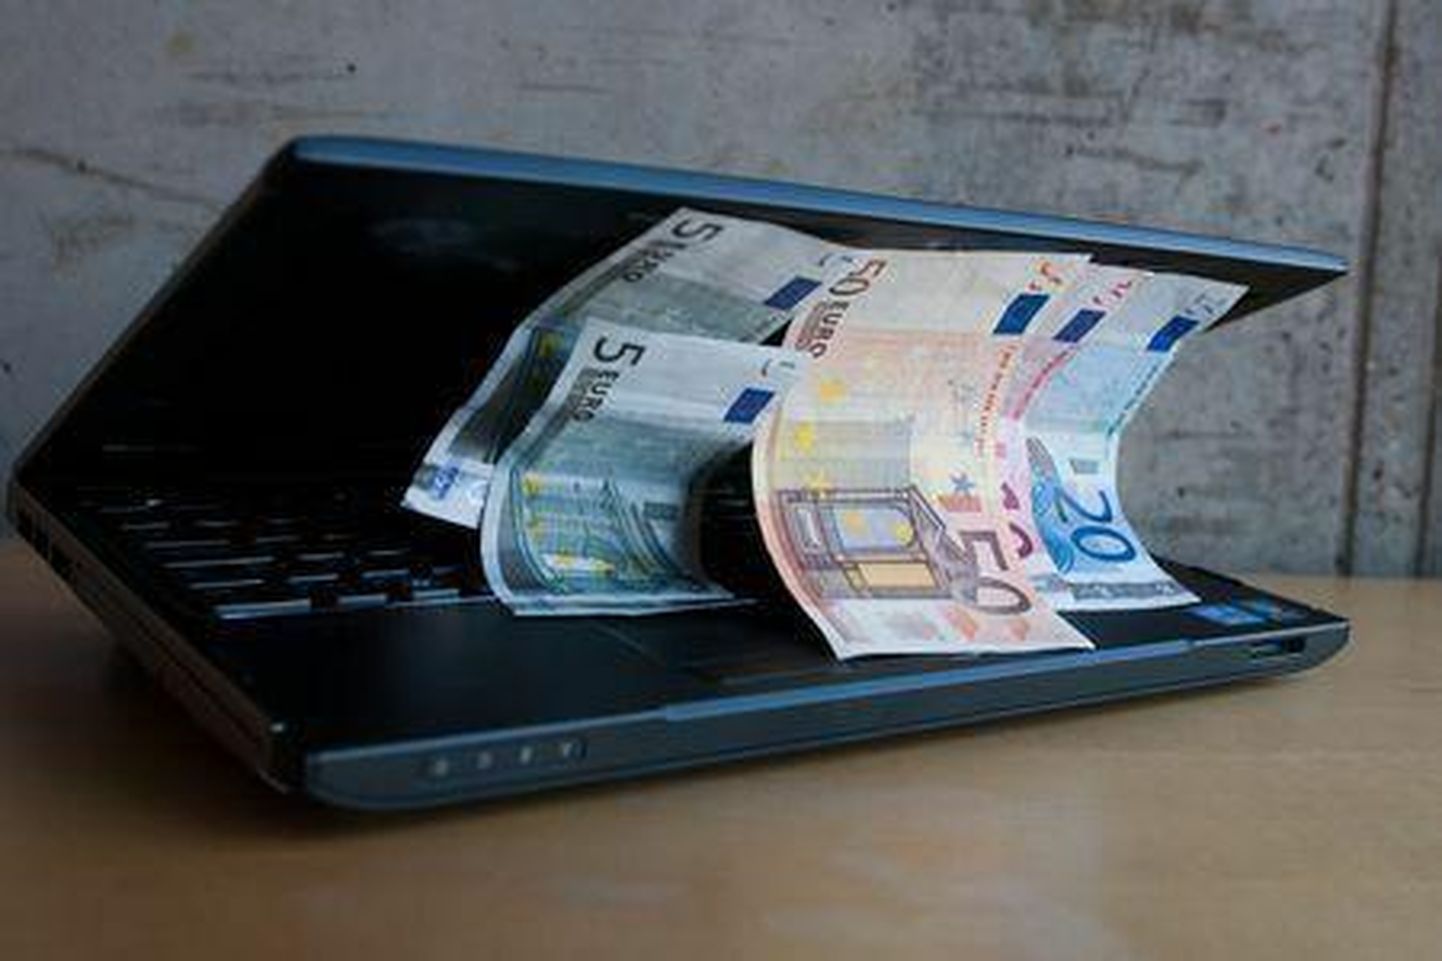 Jõgevamaa ettevõtjal pangakontolt kadus 3000 eurot.

 

 

 

 